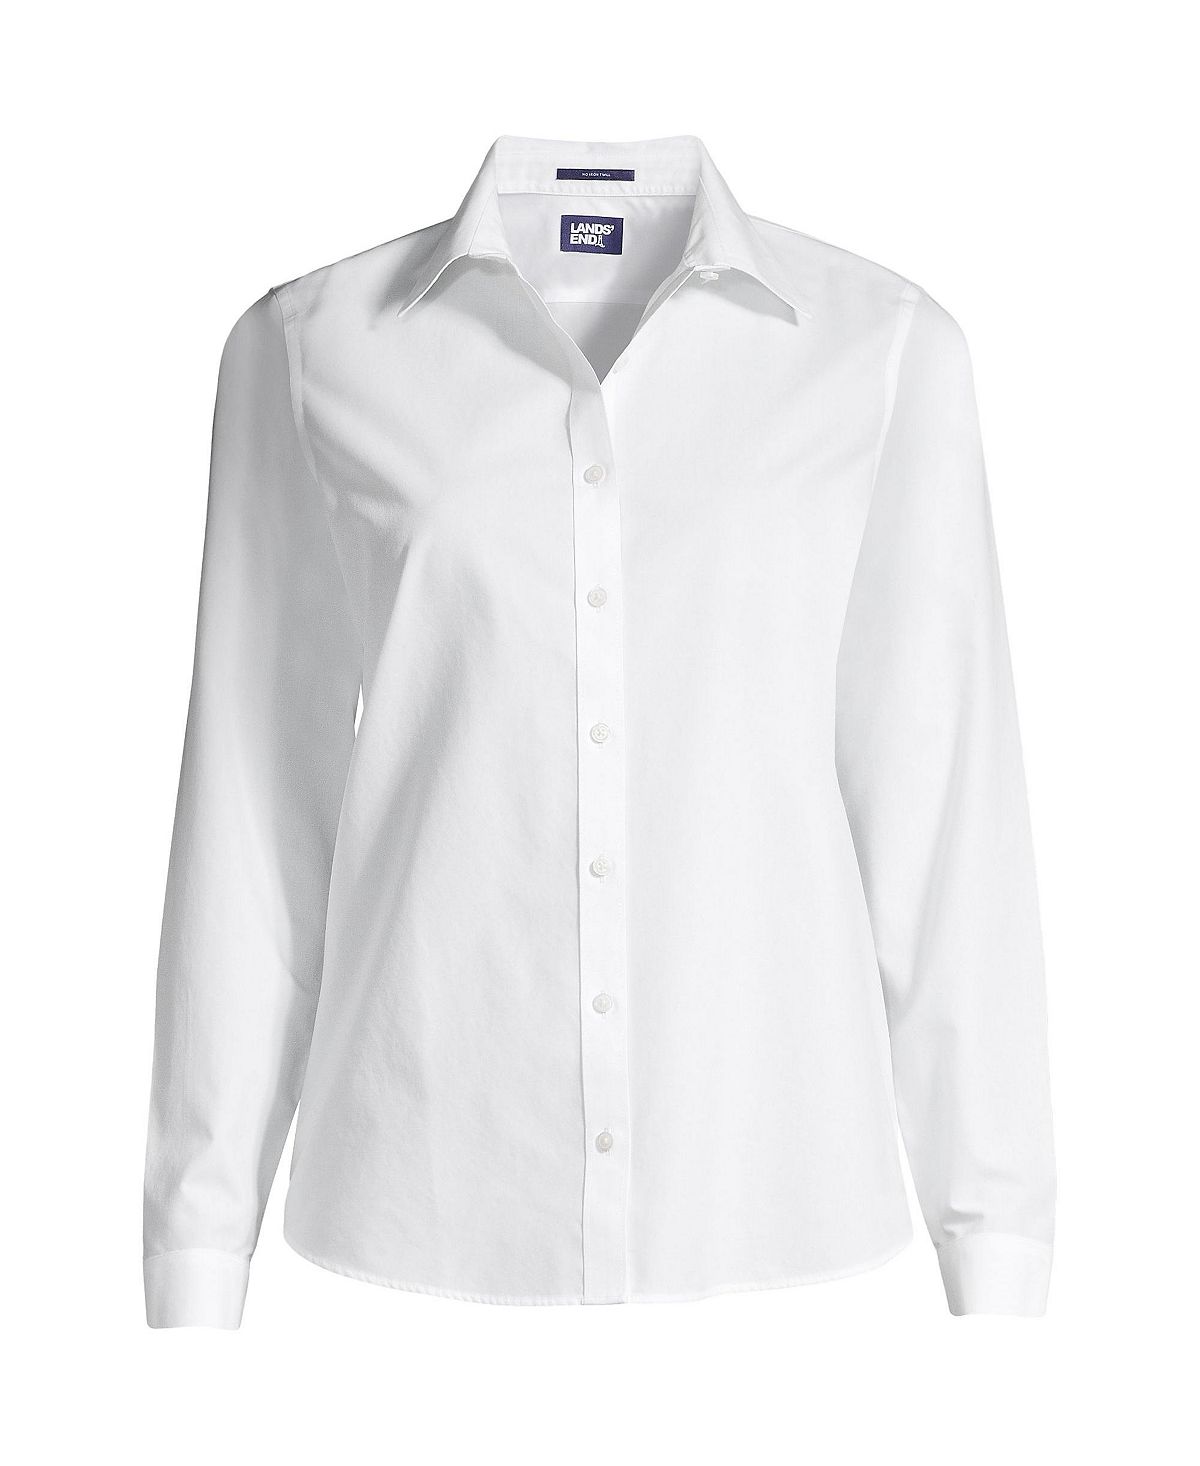 Женская рубашка с миниатюрными морщинами и без железных пуговиц спереди Lands' End, белый